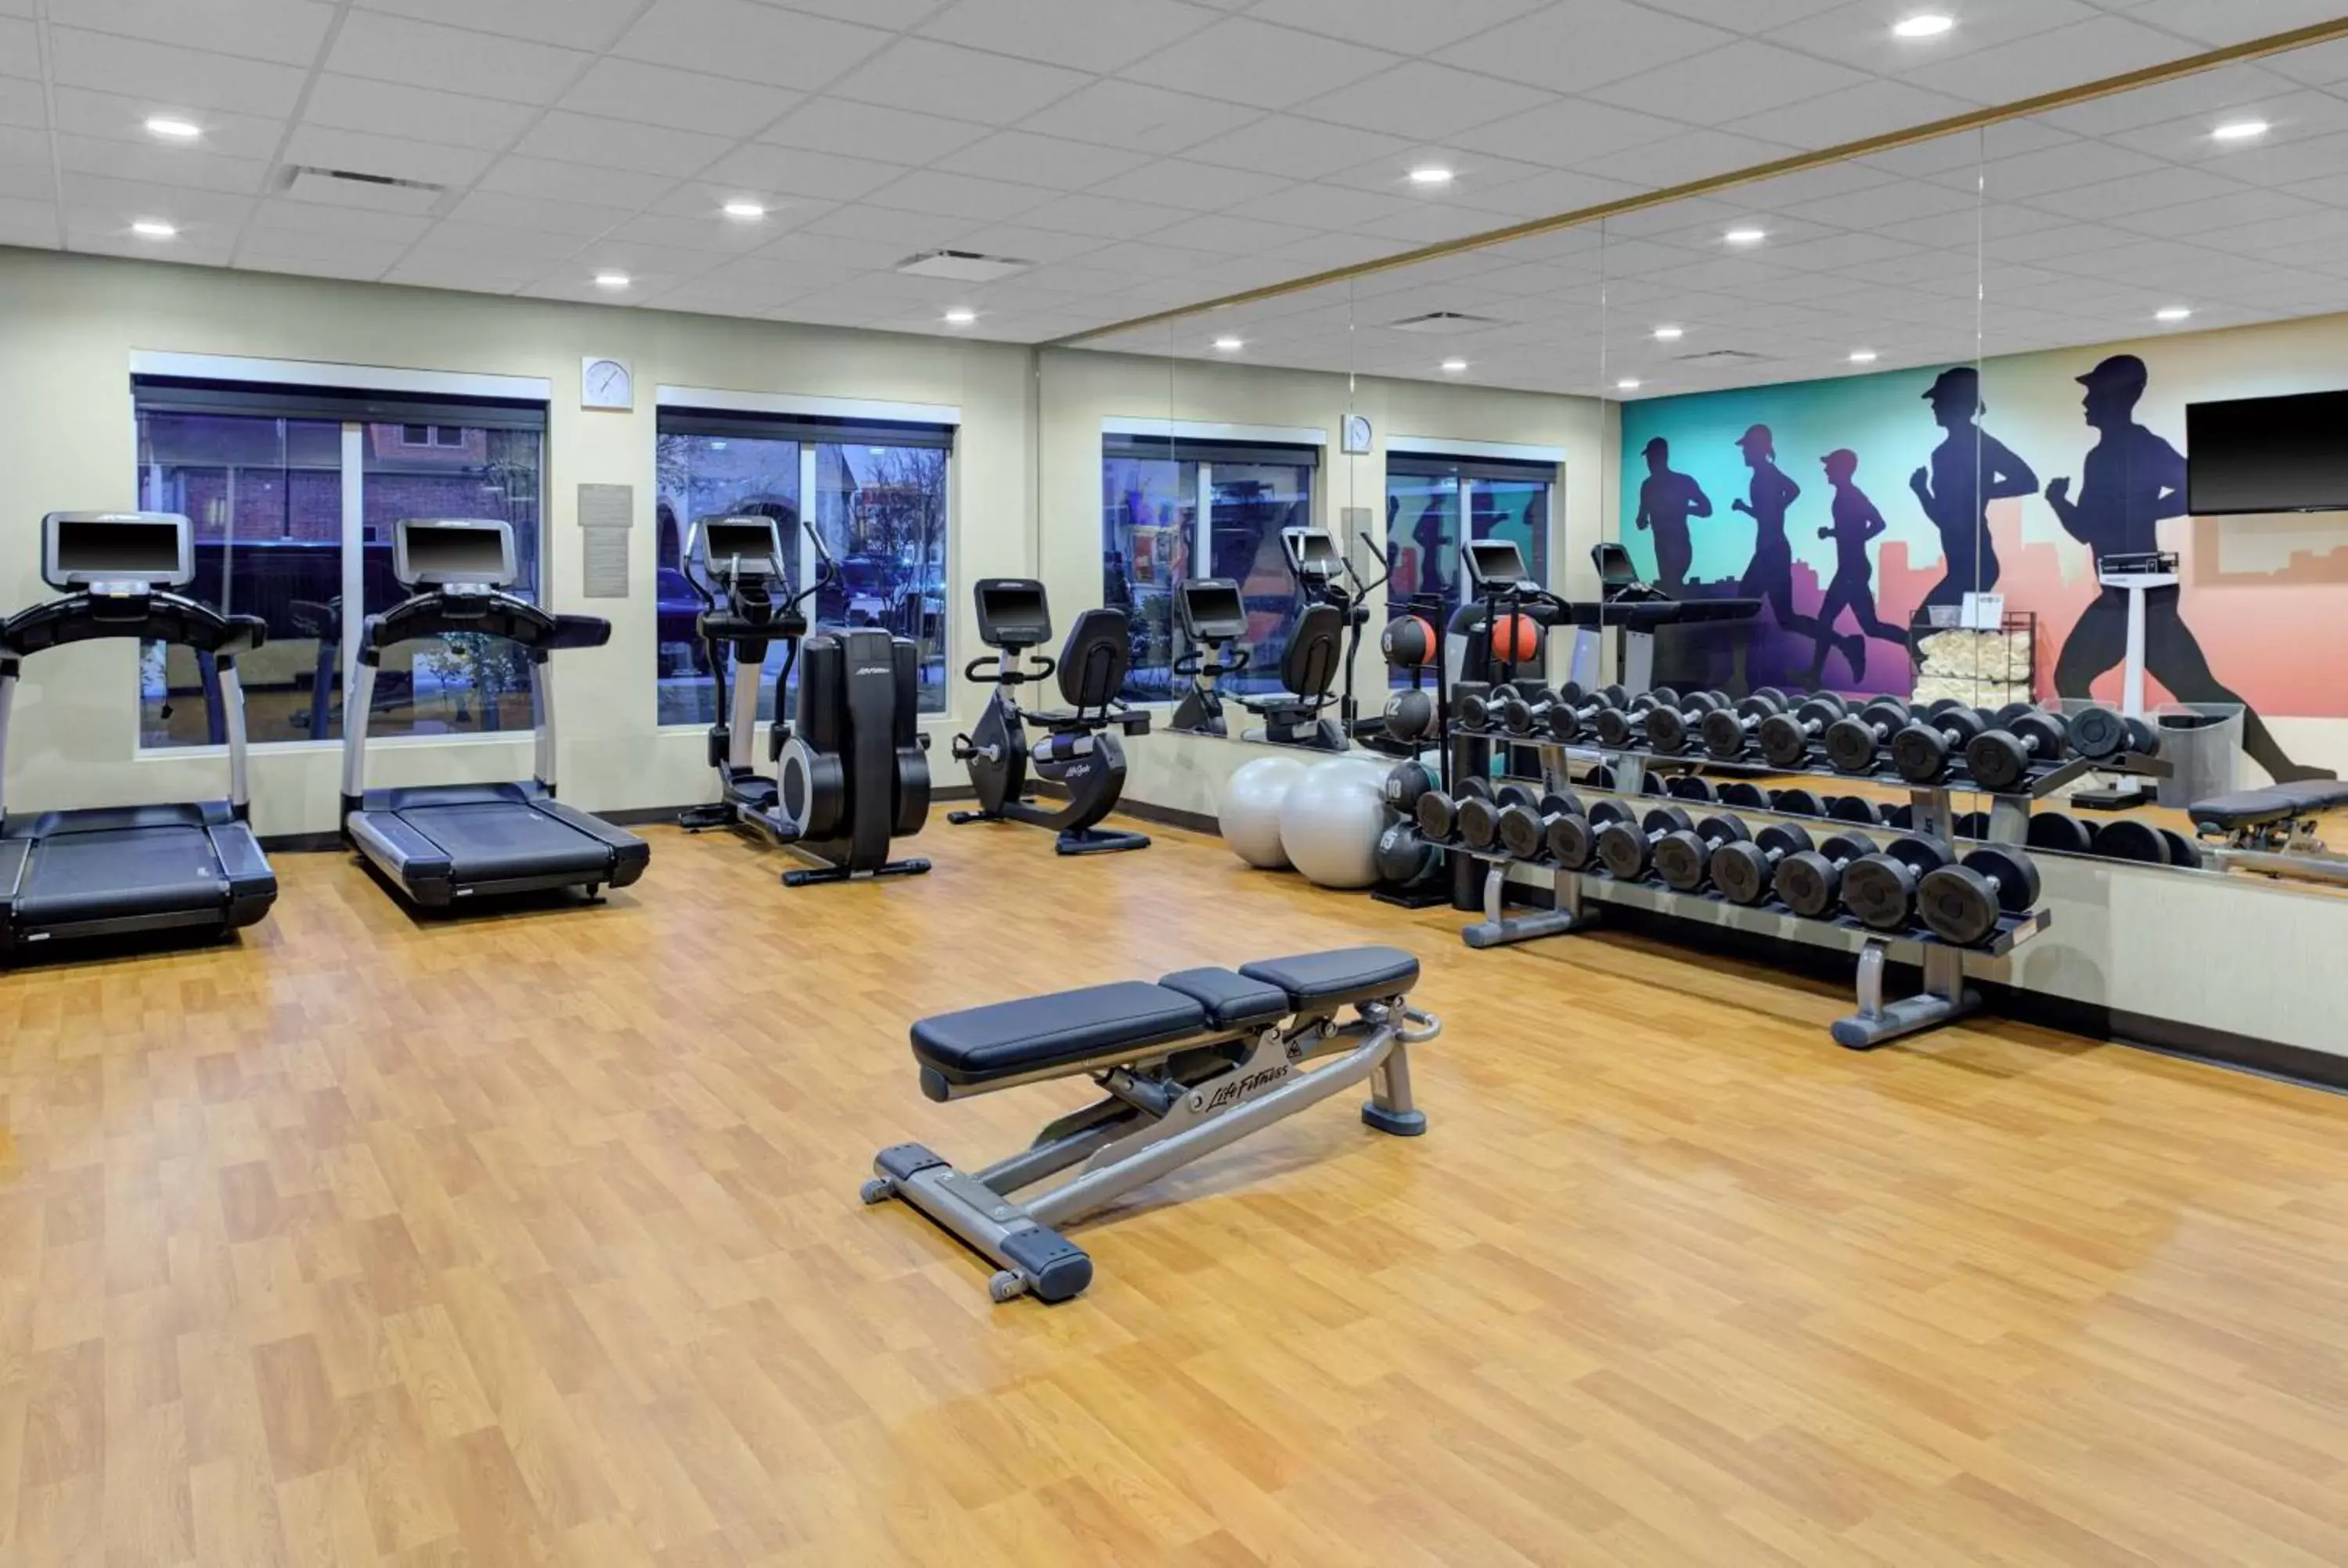 Fitness centre/facilities, Fitness Center/Facilities in Hyatt Place Dallas/Allen